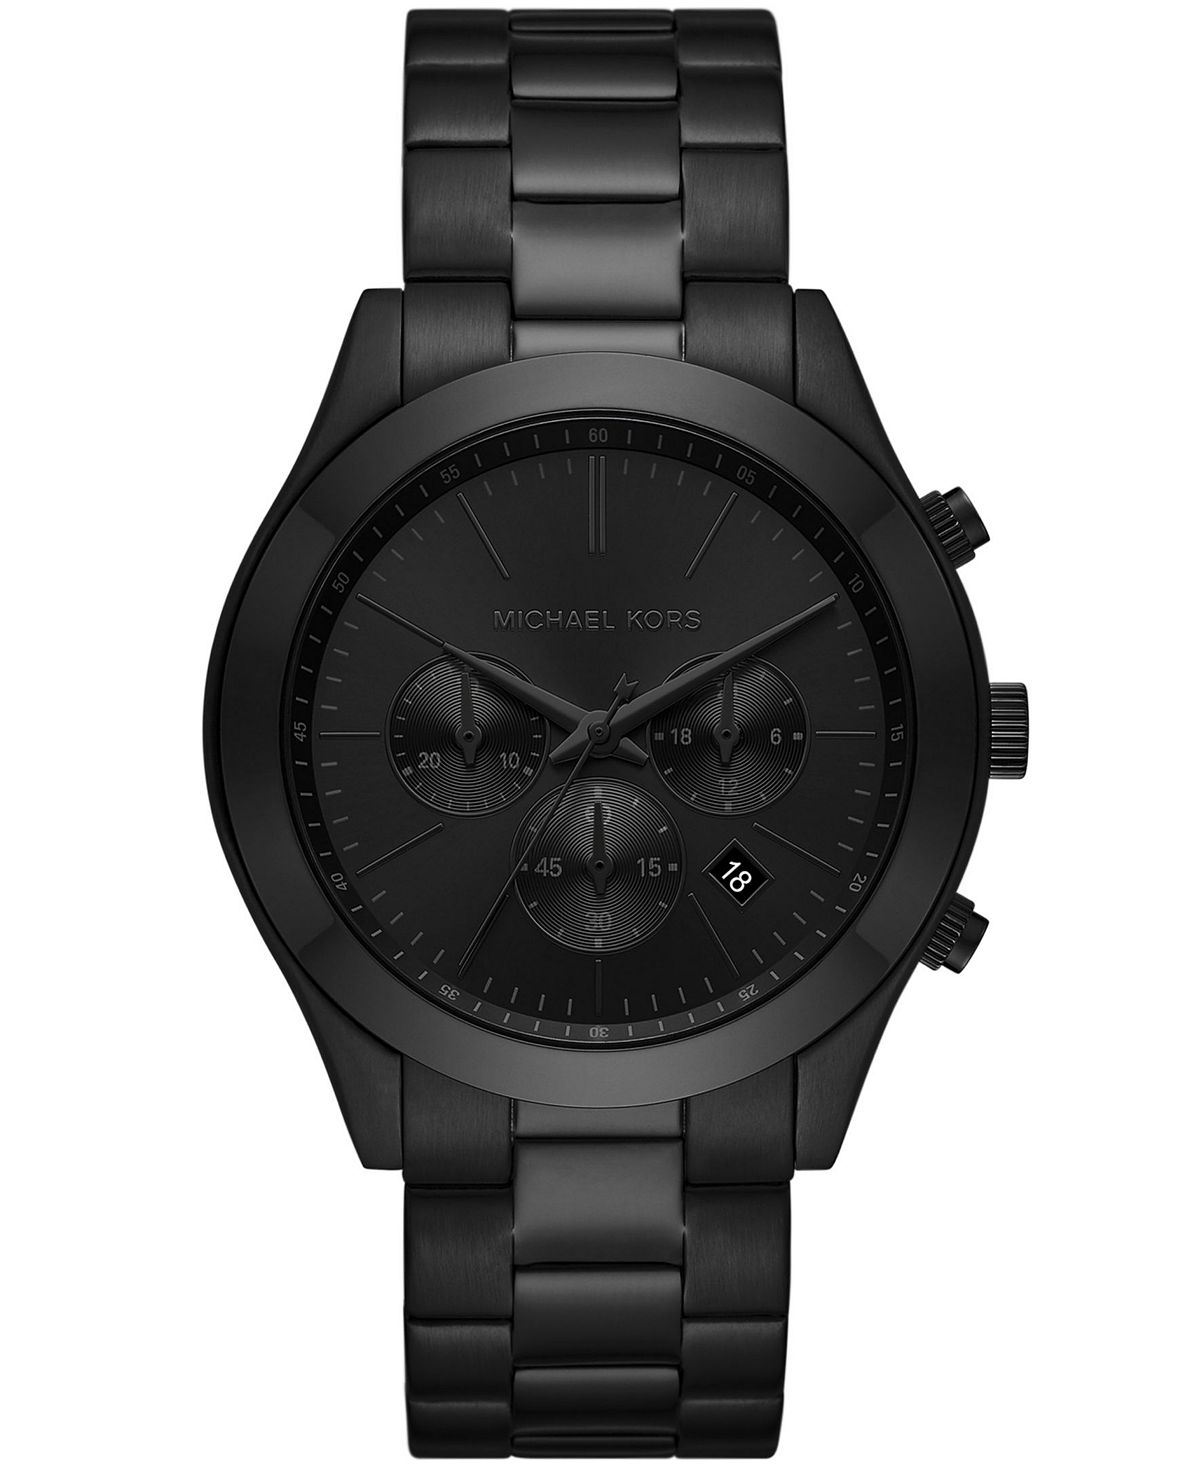 Мужские тонкие часы с браслетом из нержавеющей стали, черный цвет, 44 мм Michael Kors